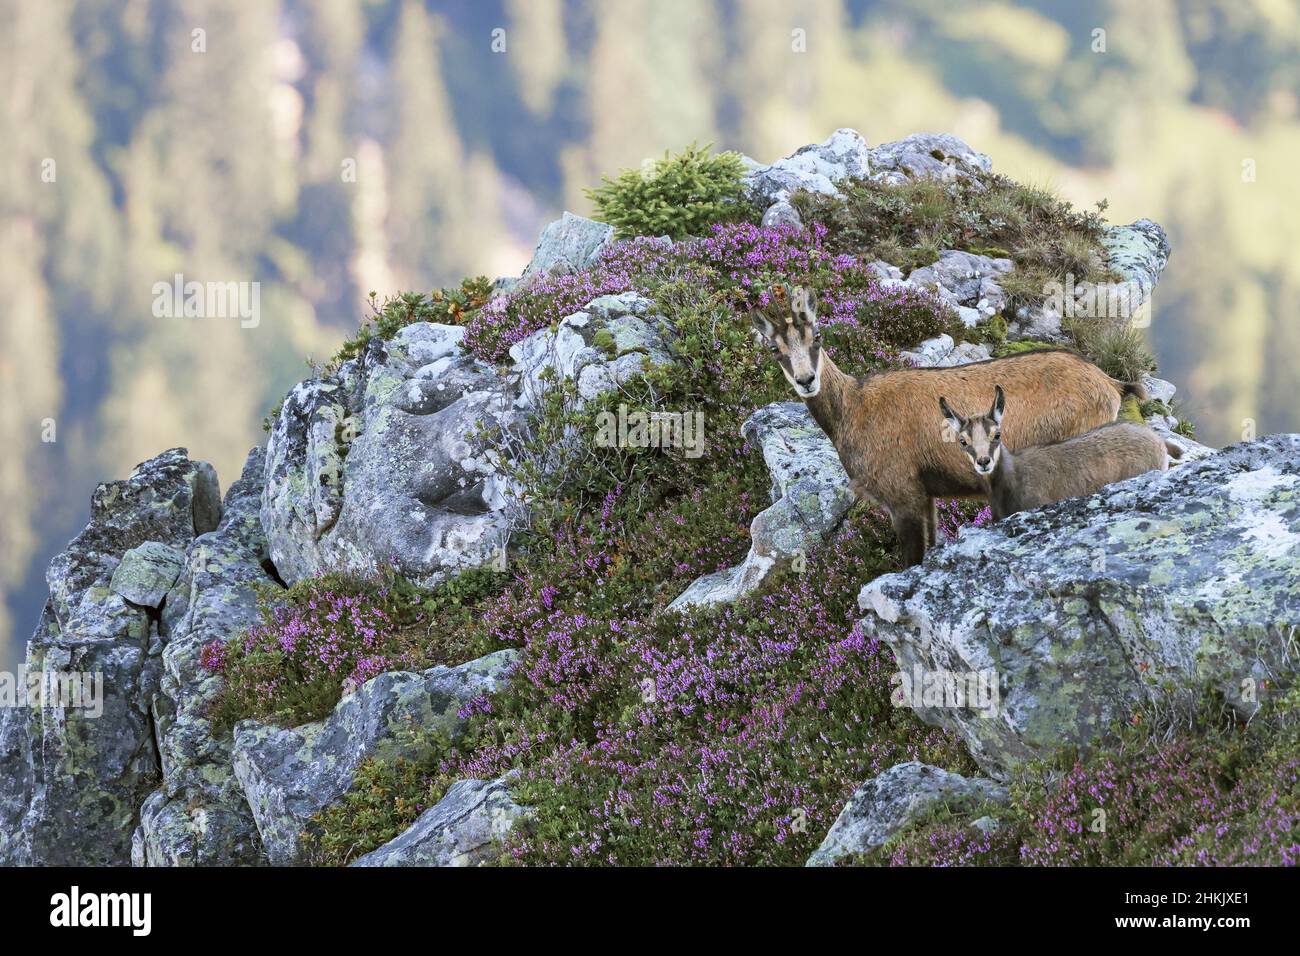 Camosci (Rupicapra rupicapra), femmina e pegno in piedi insieme in una sciarpa di montagna, Svizzera, Oberland Bernese, Beatenberg Foto Stock